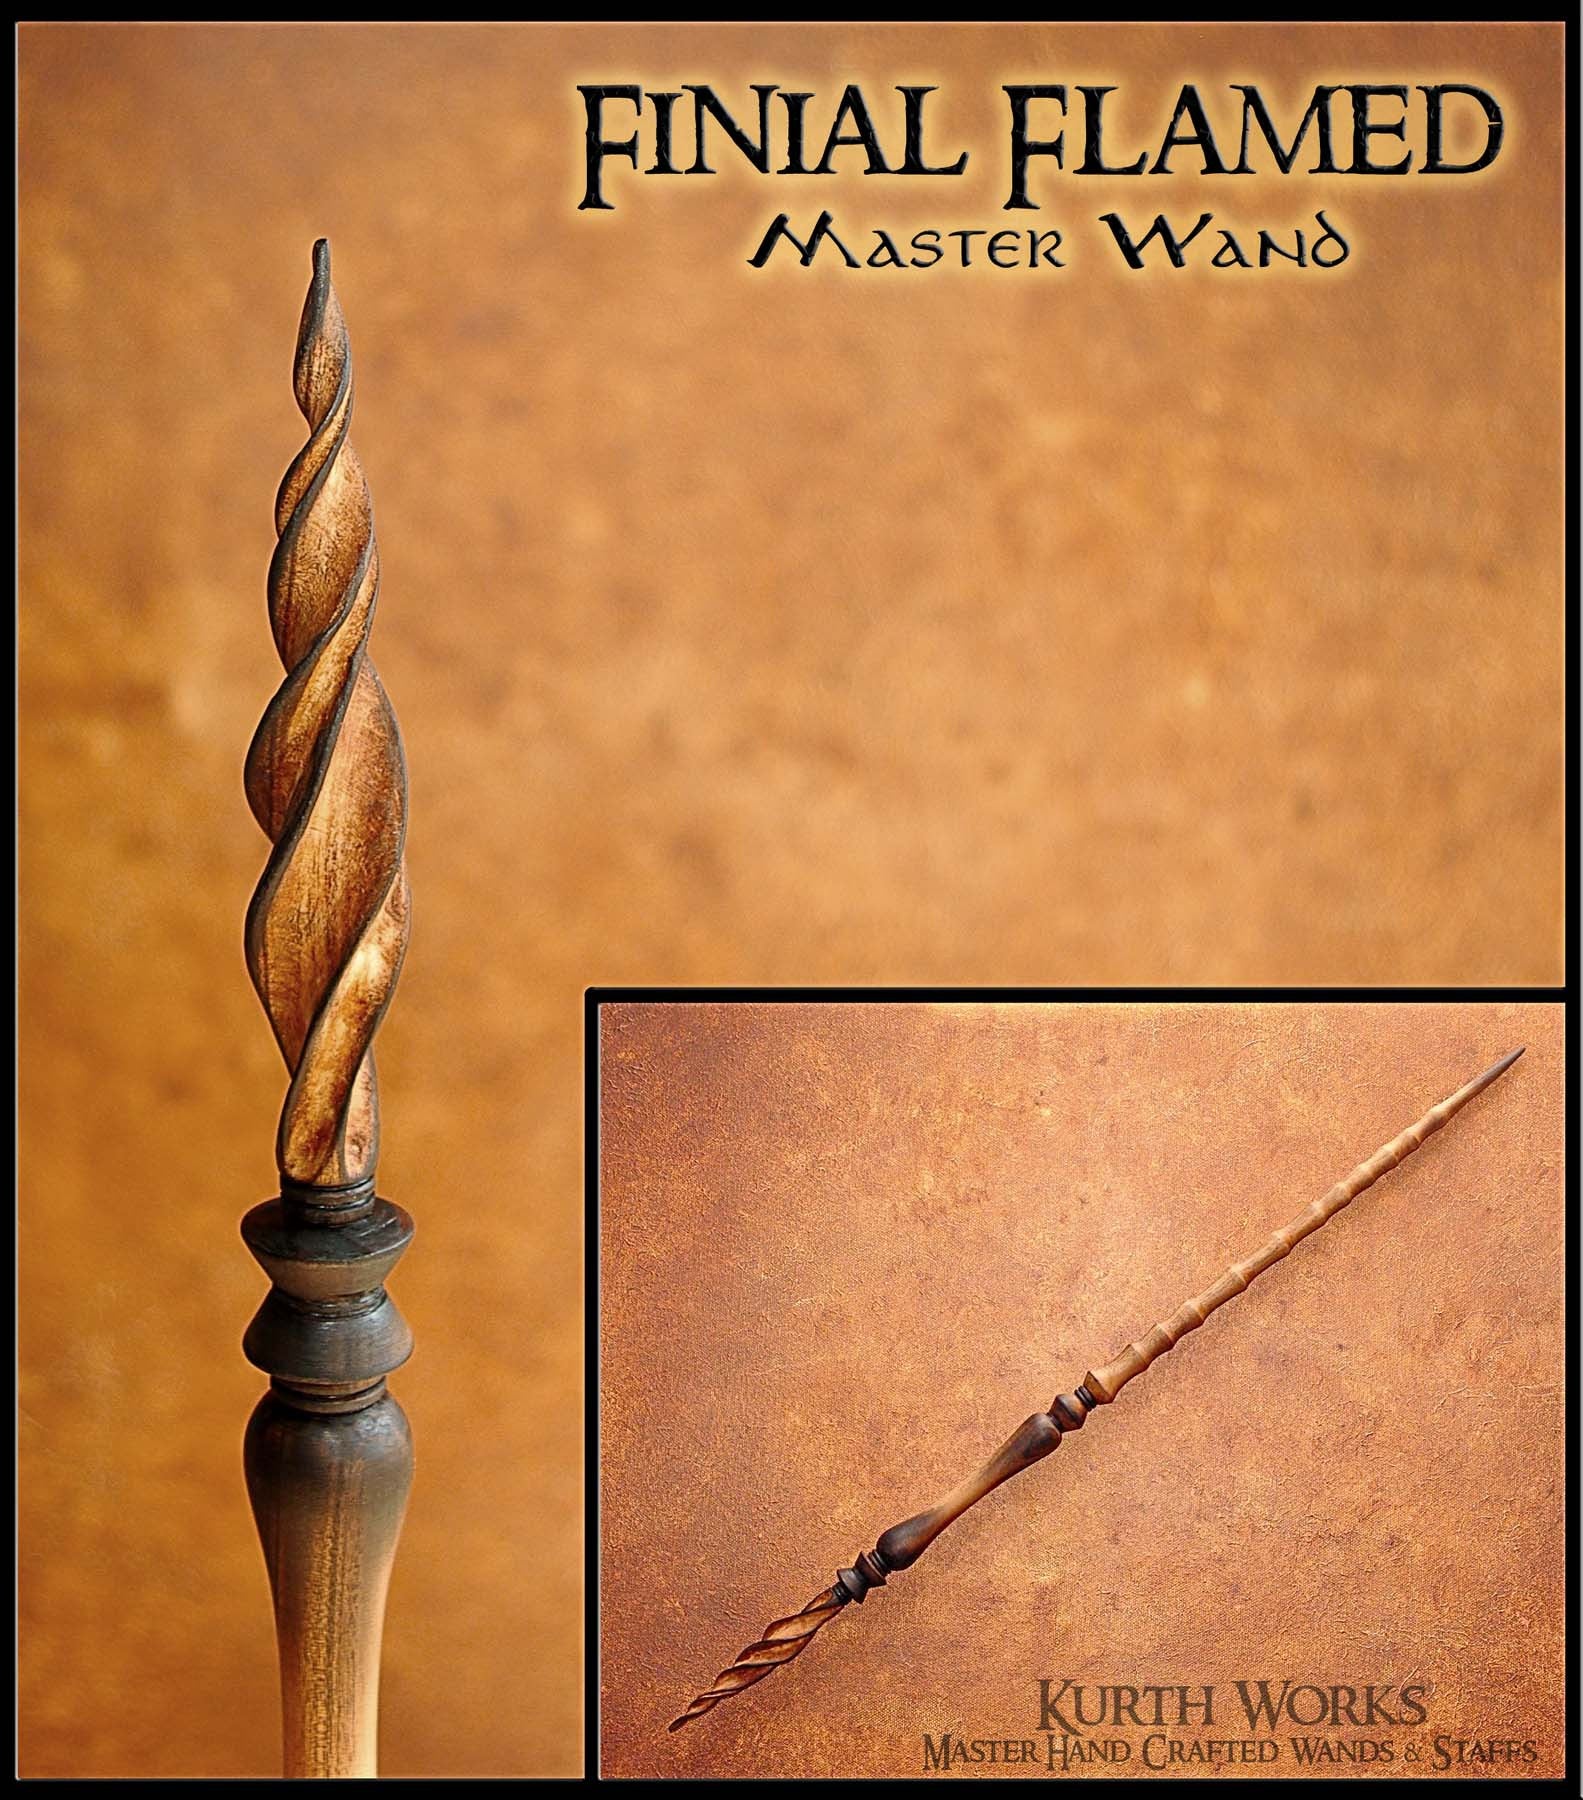 Finial Flamed Wizard Magic Wand